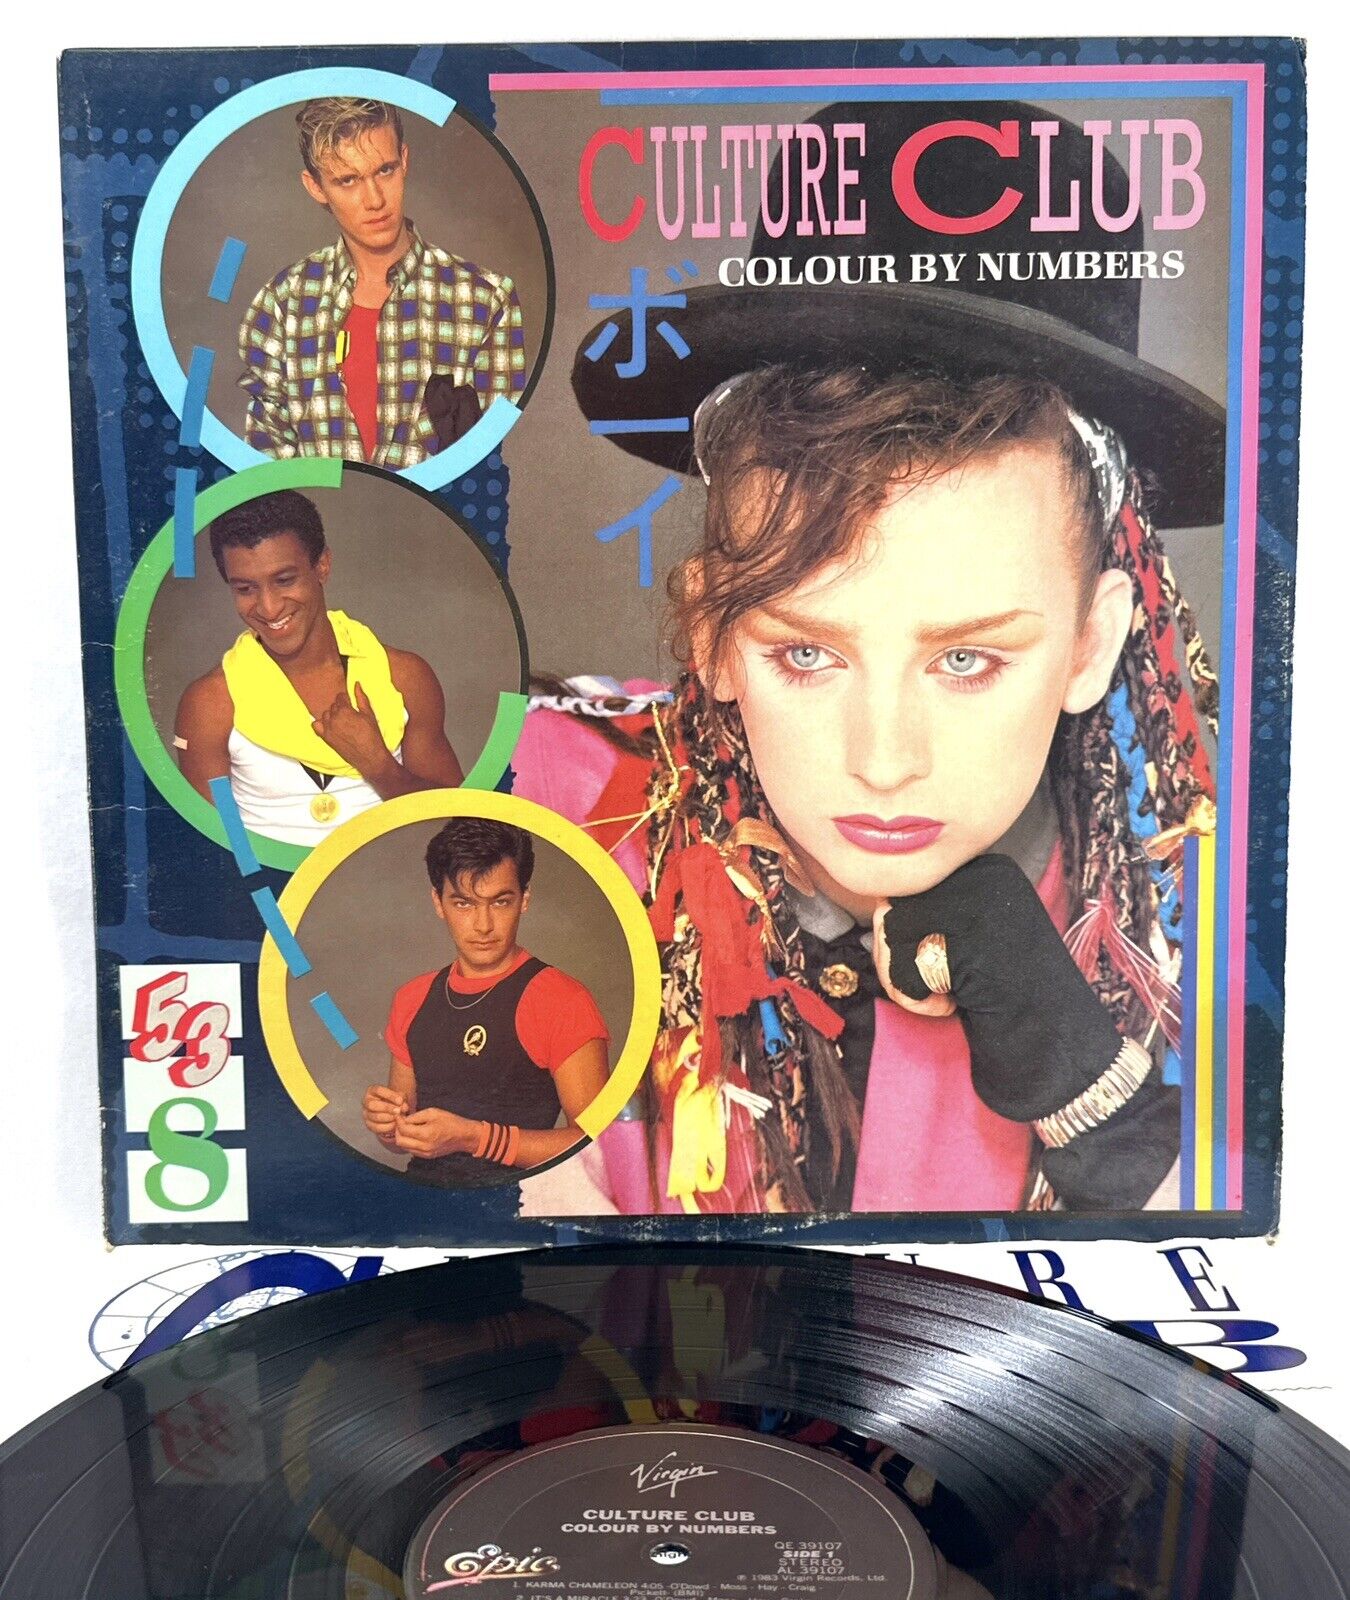 CULTURE CLUB Colour By Number Virgin QE 39107 Vinyl LP Boy George EX